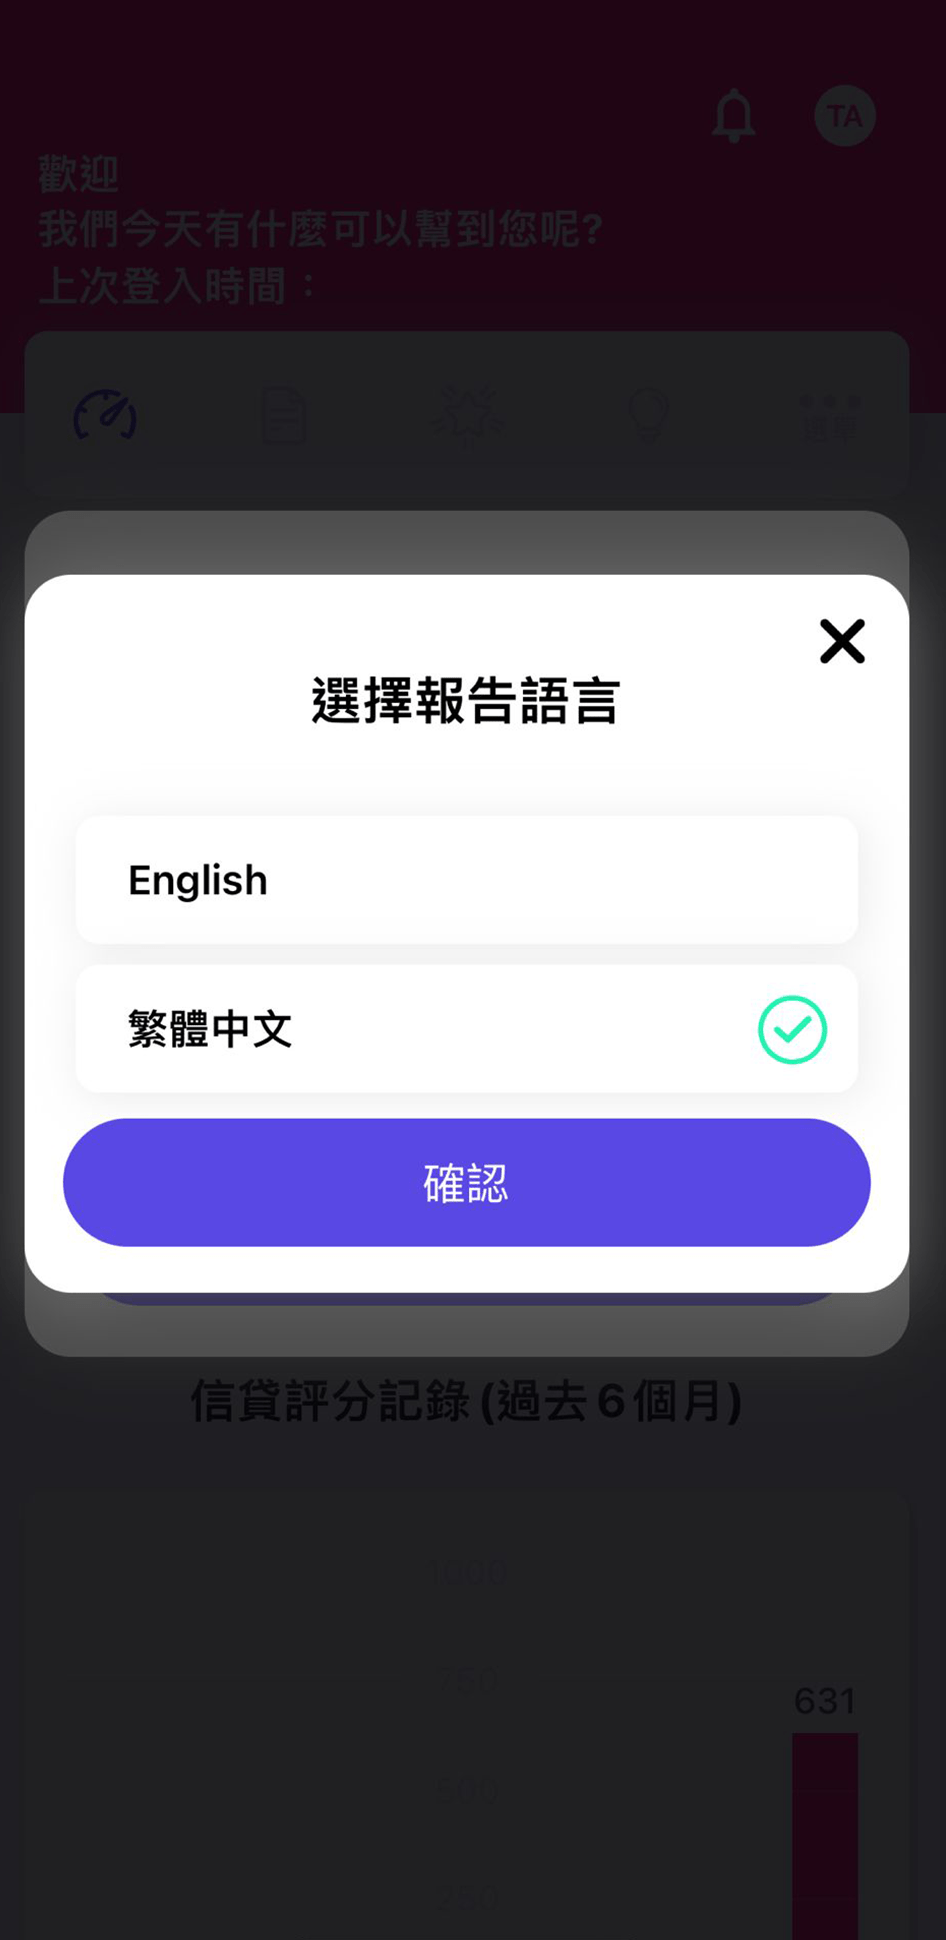 步驟 2：選擇報告語言，支援「繁體中文版」或「英文版」兩種語言版本